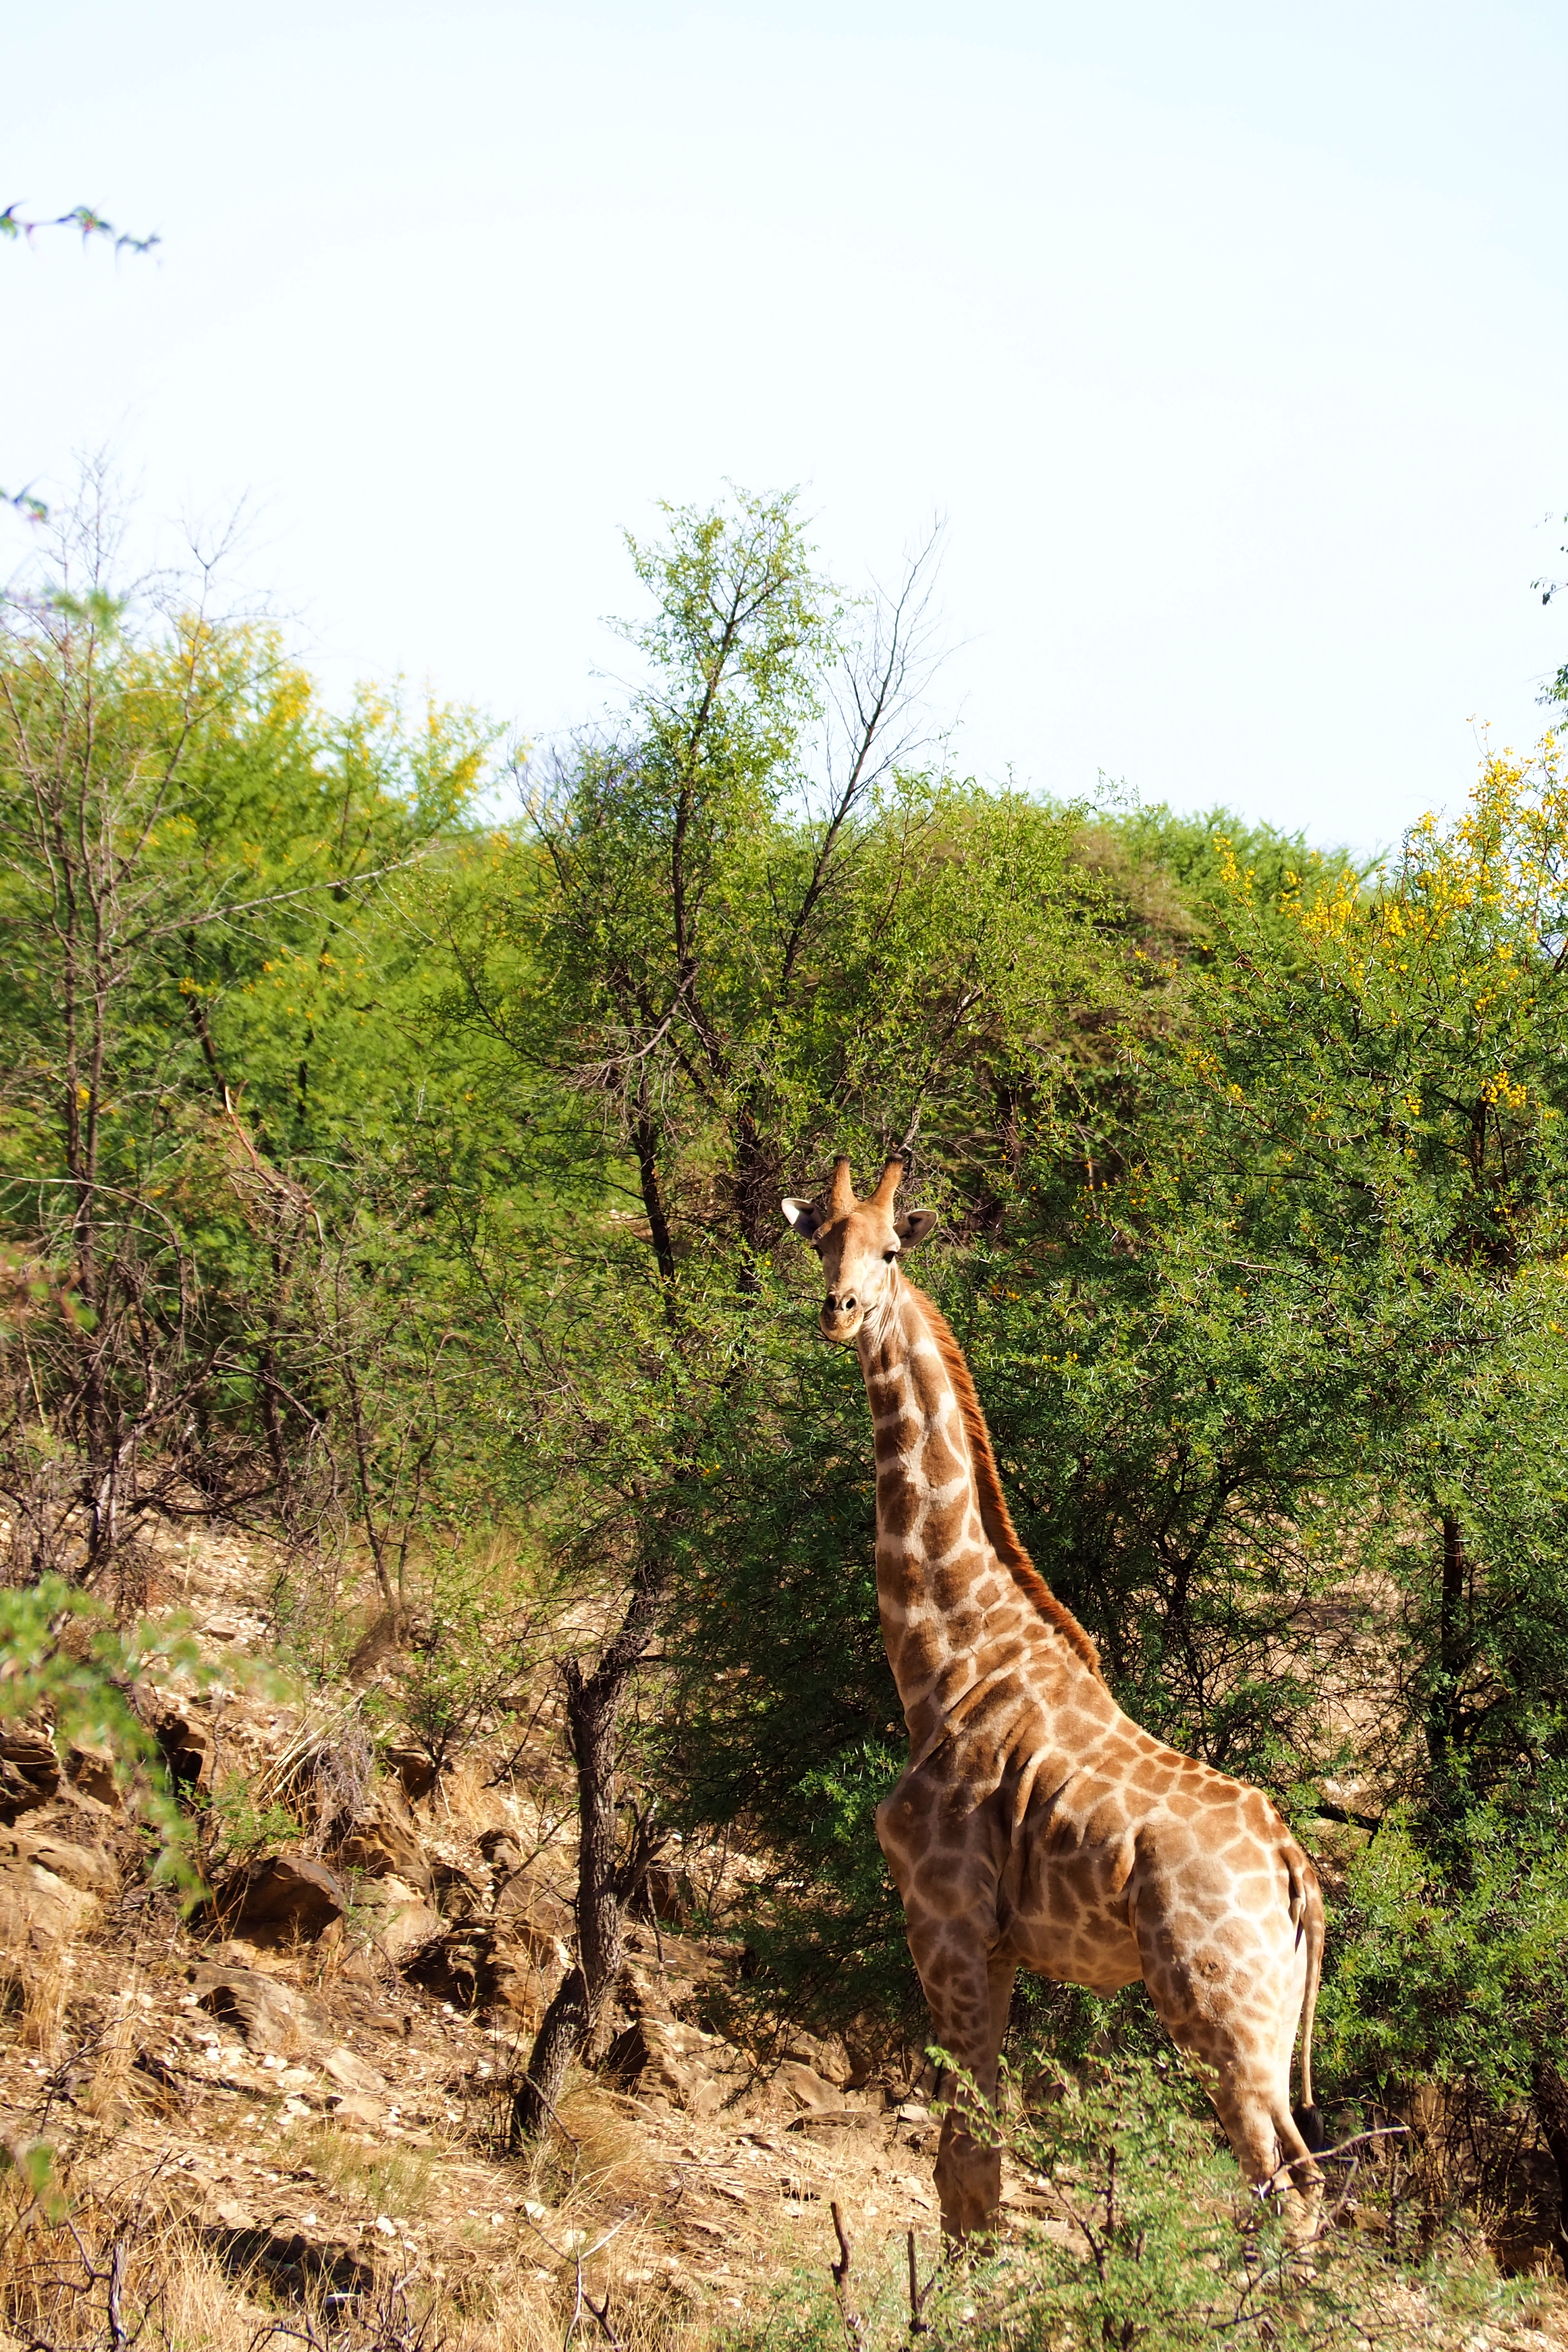 https://cdn.aucklandunlimited.com/zoo/assets/media/1-angolan-giraffe-portrait-at-daan-viljoen-c-gcfjpg.jpg